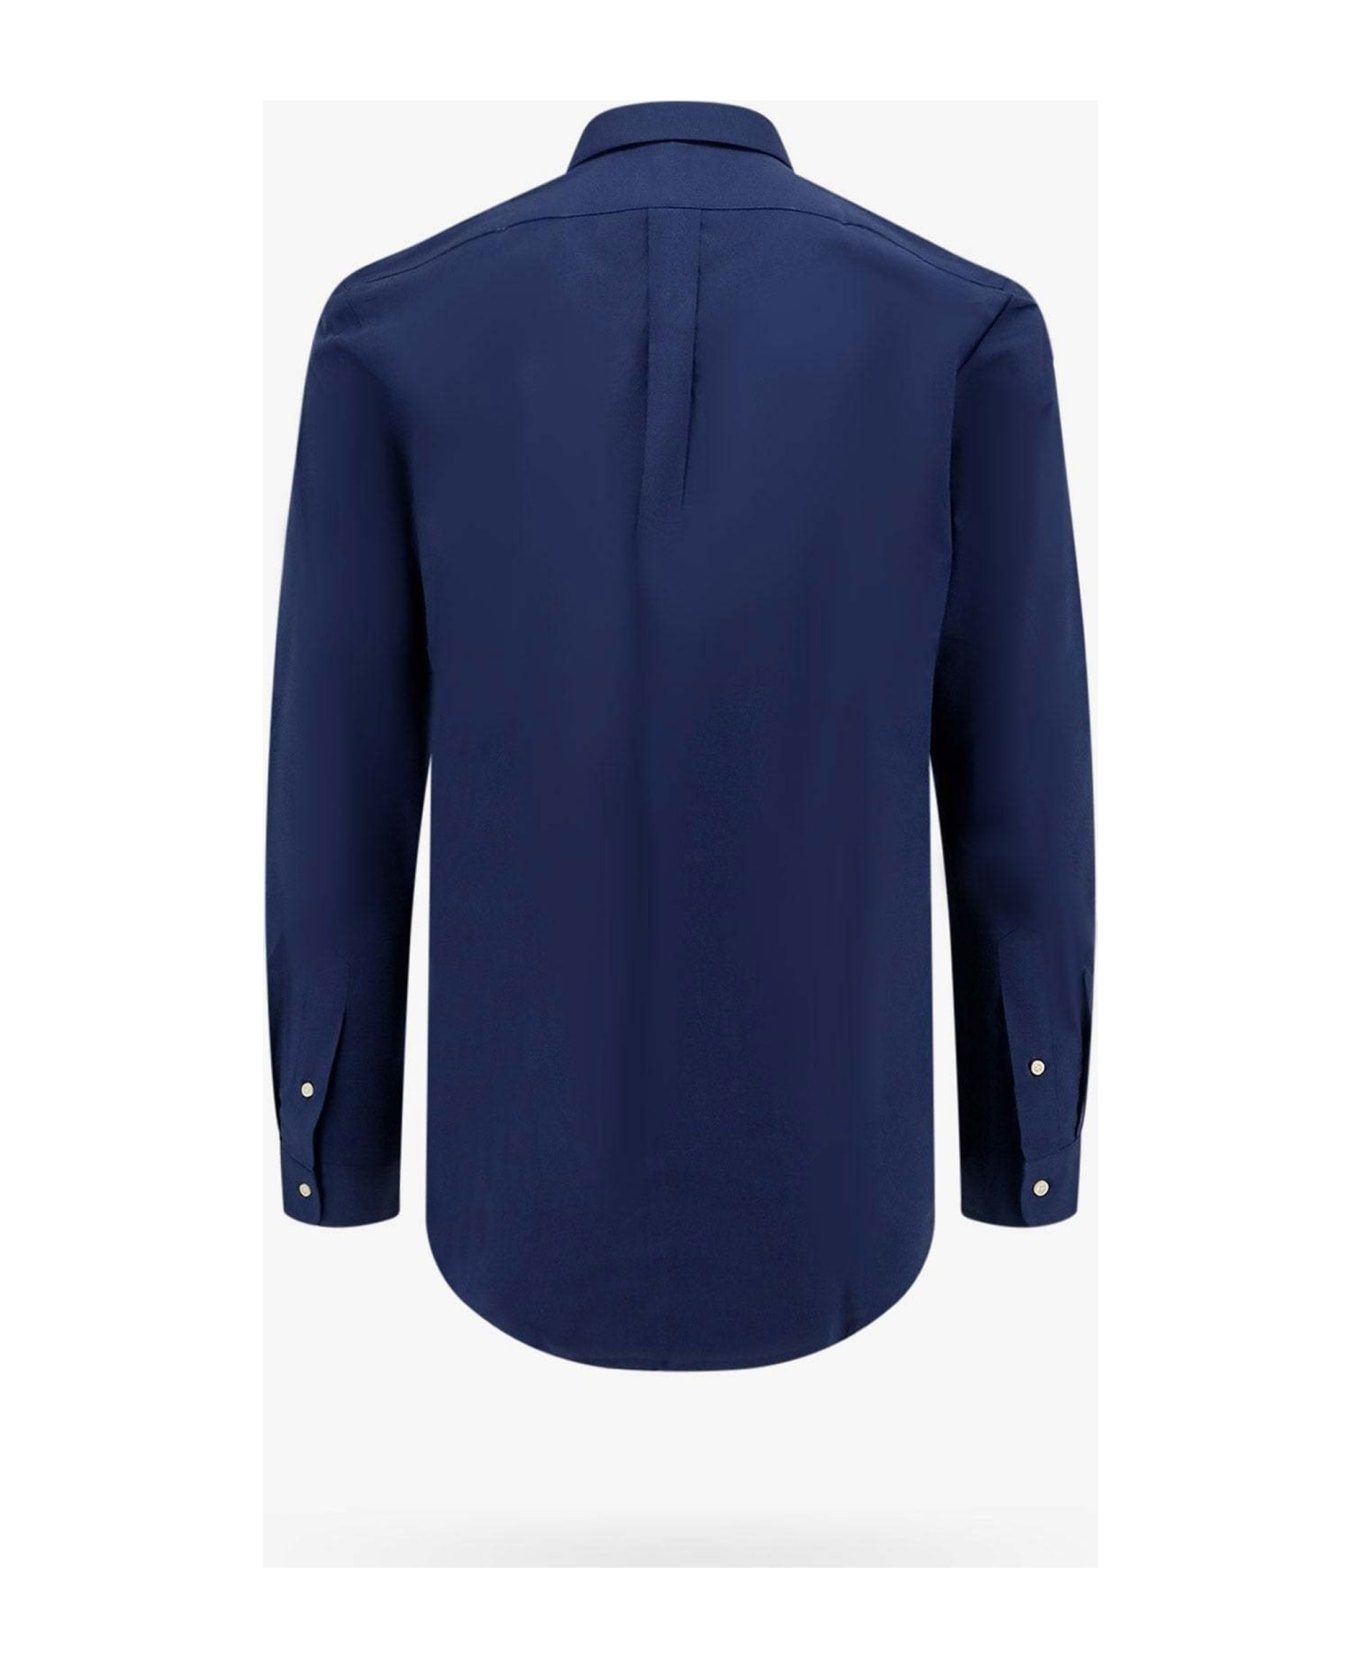 Polo Ralph Lauren Navy Blue Long-sleeved Shirt With Logo - NEWPORT NAVY